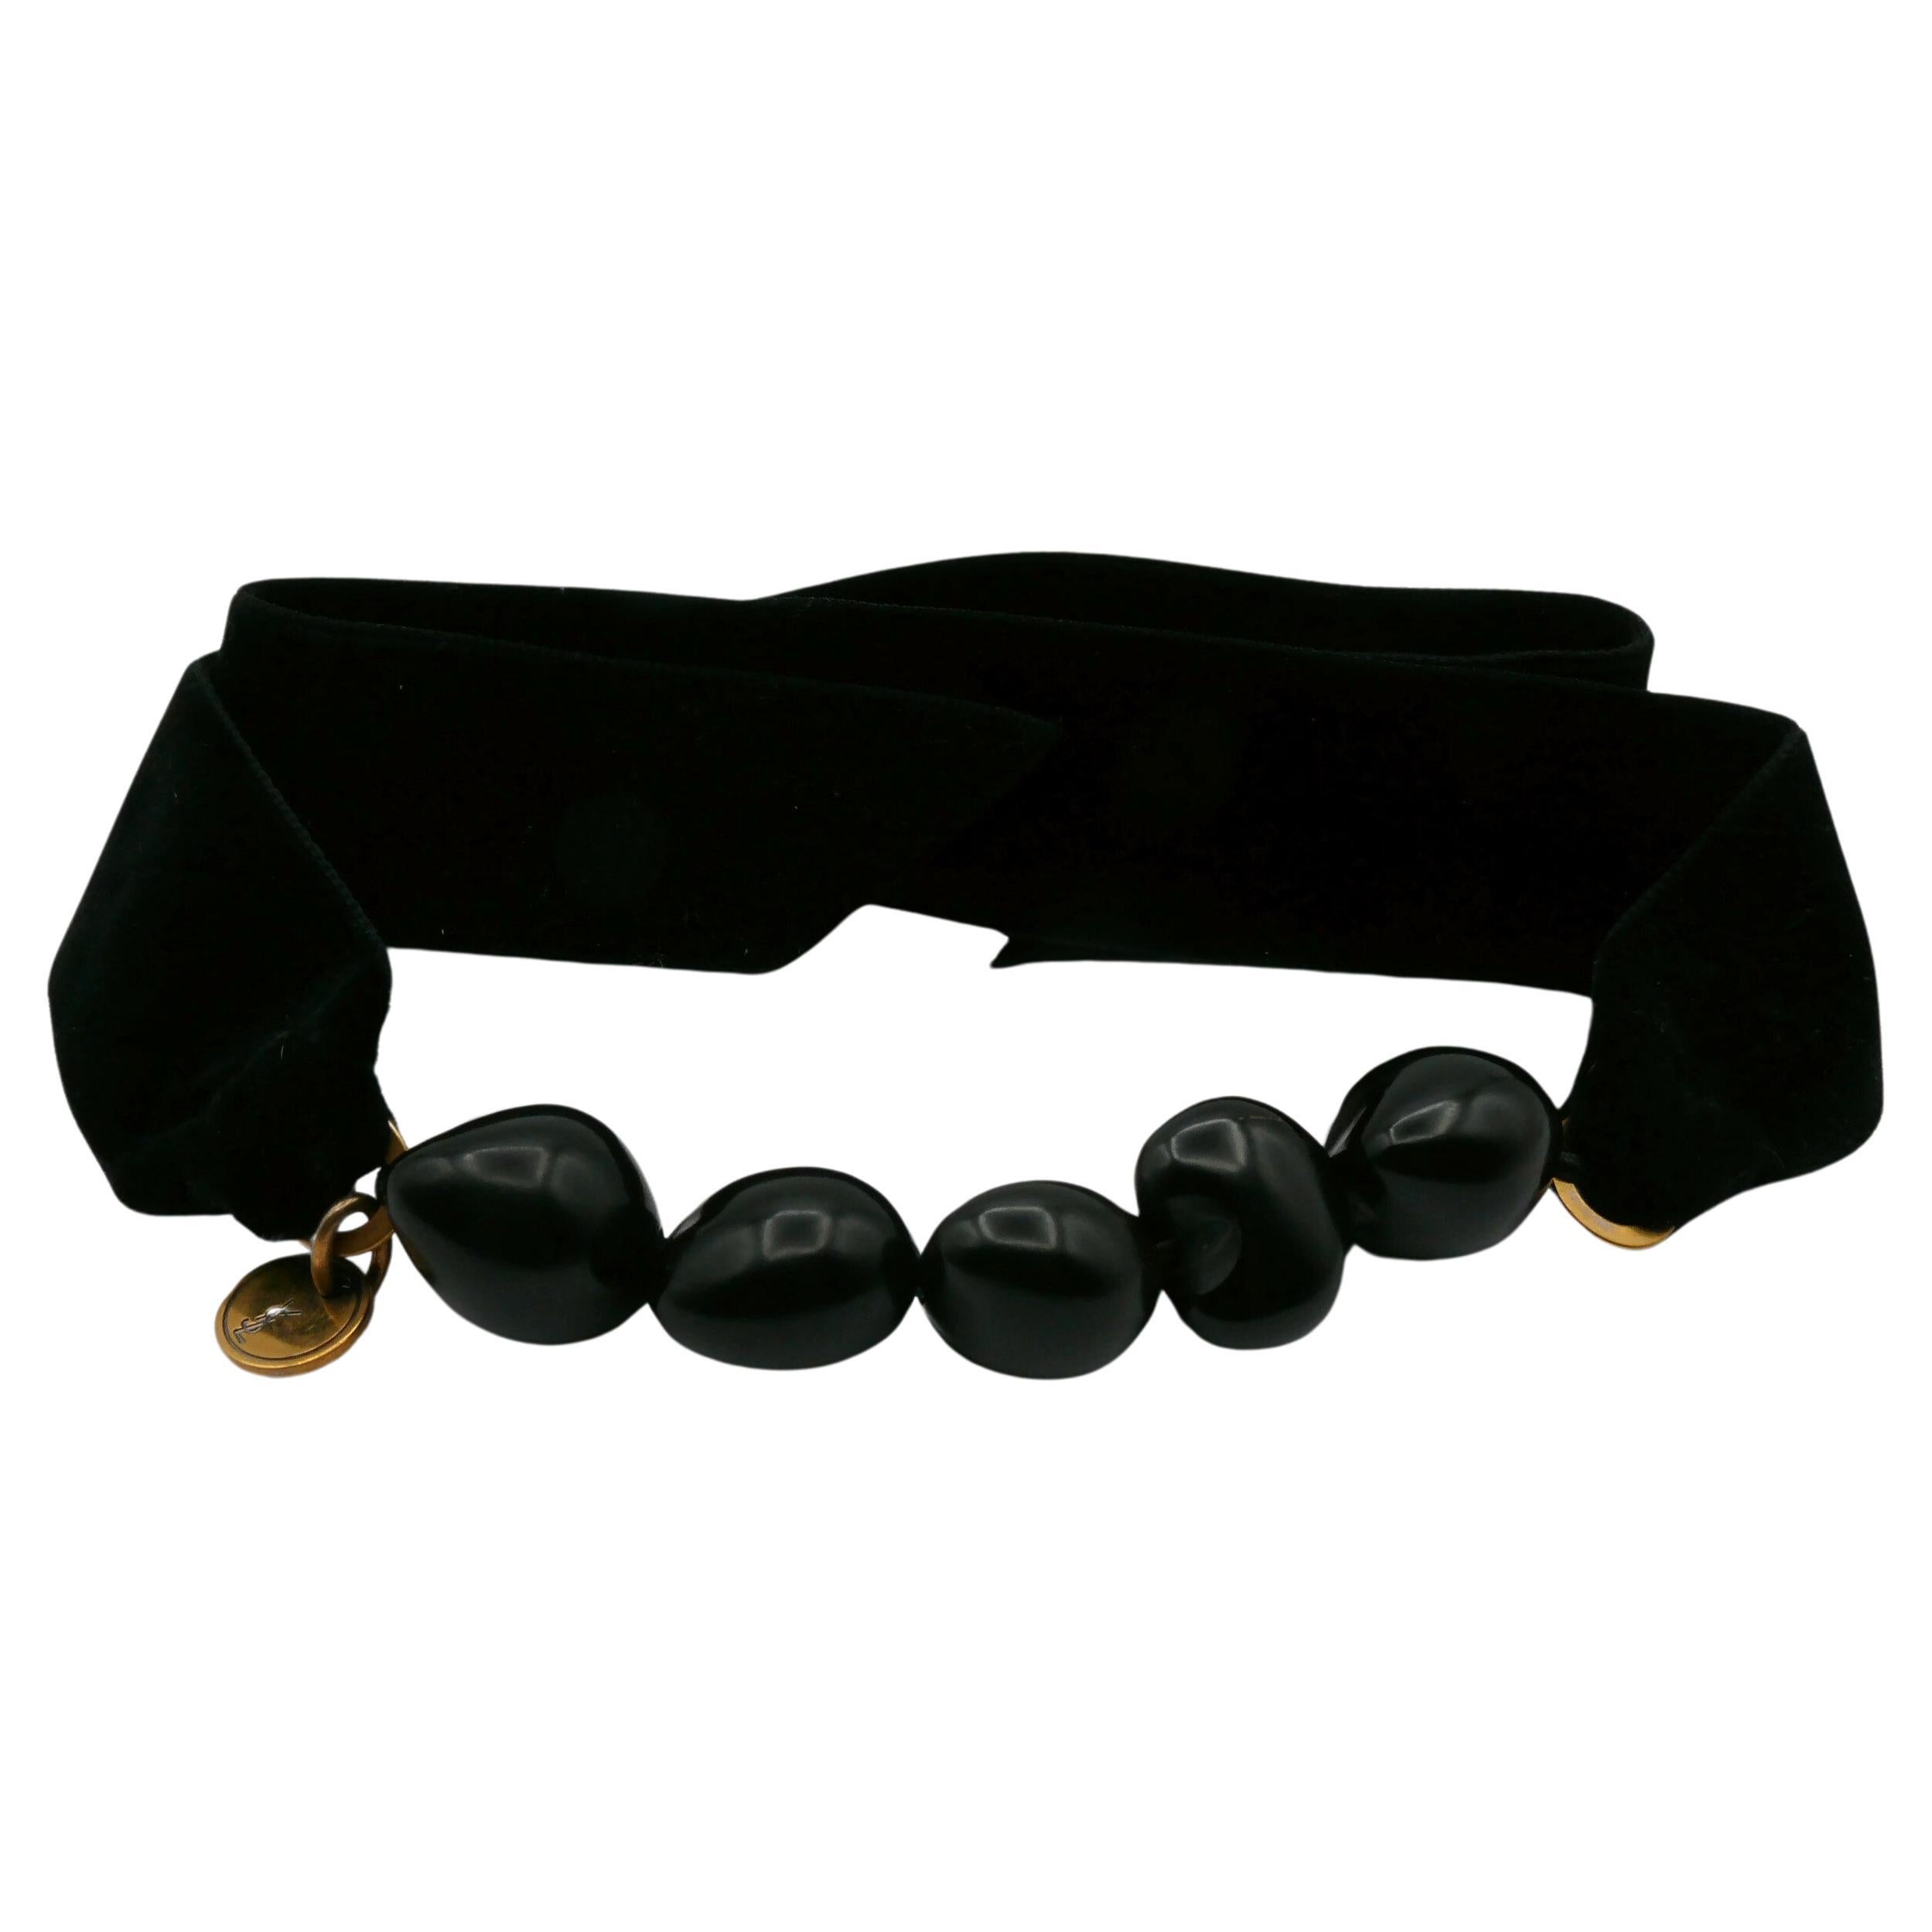 YVES SAINT LAURENT Black Resin Bead and Velvet Choker Necklace & Bracelet